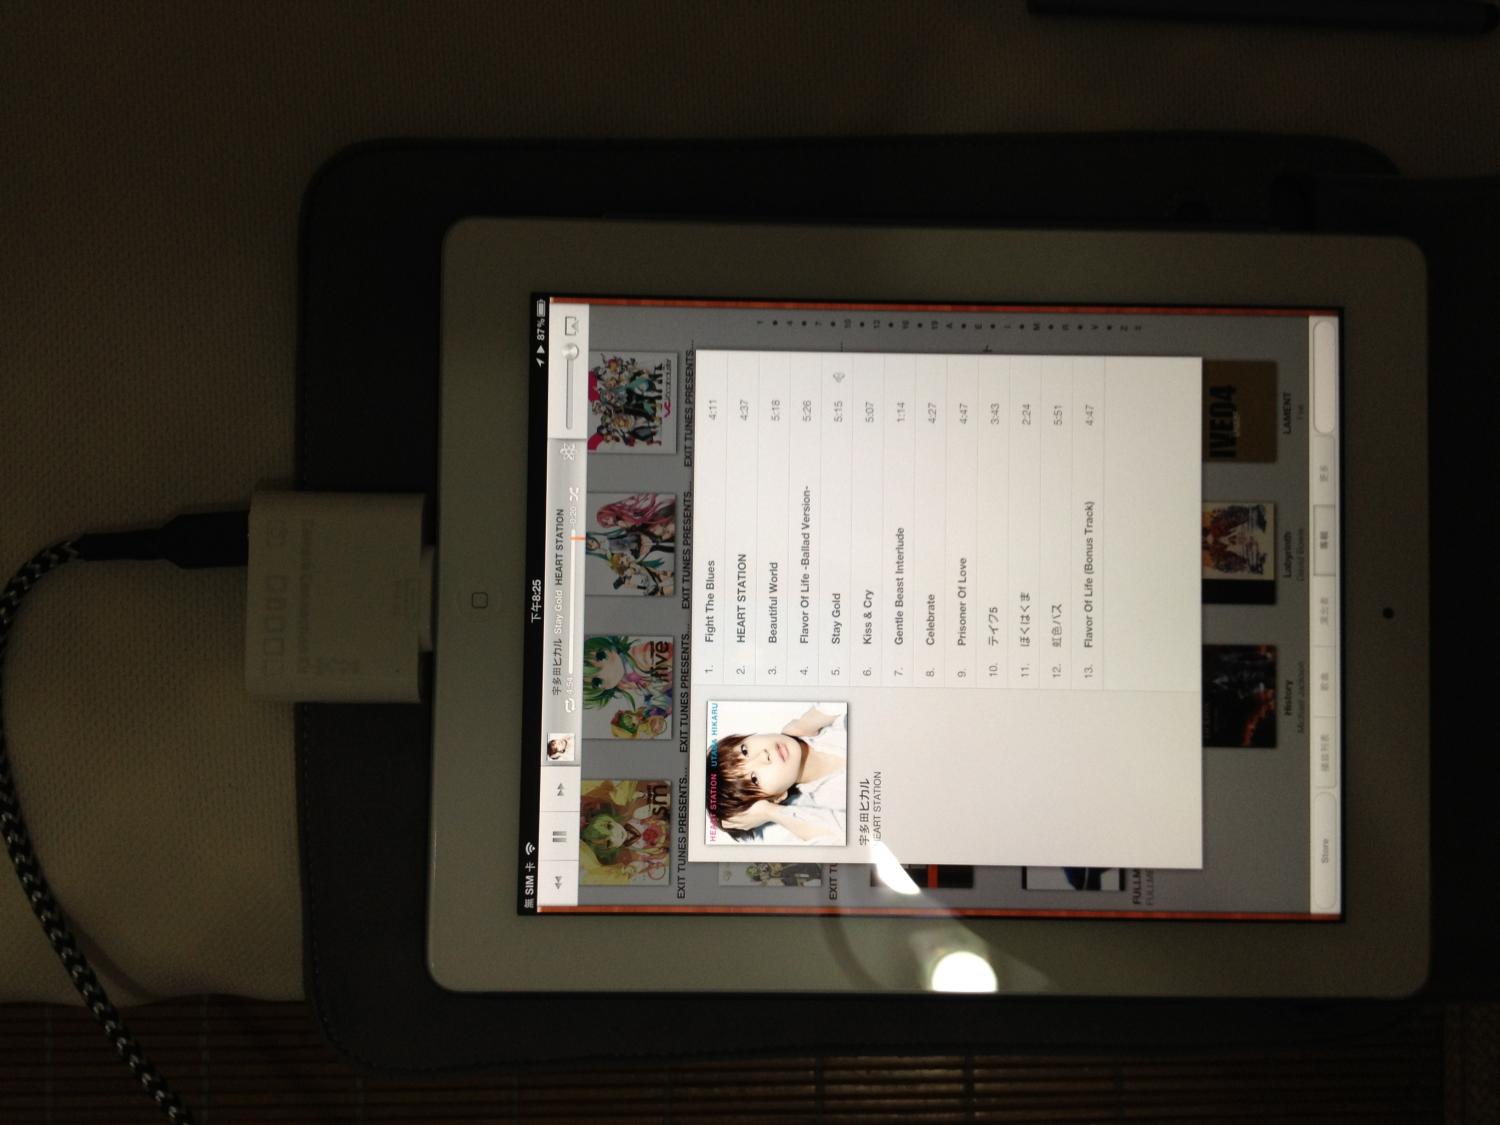 New iPad+Camera Connection Kit +Fubar 3